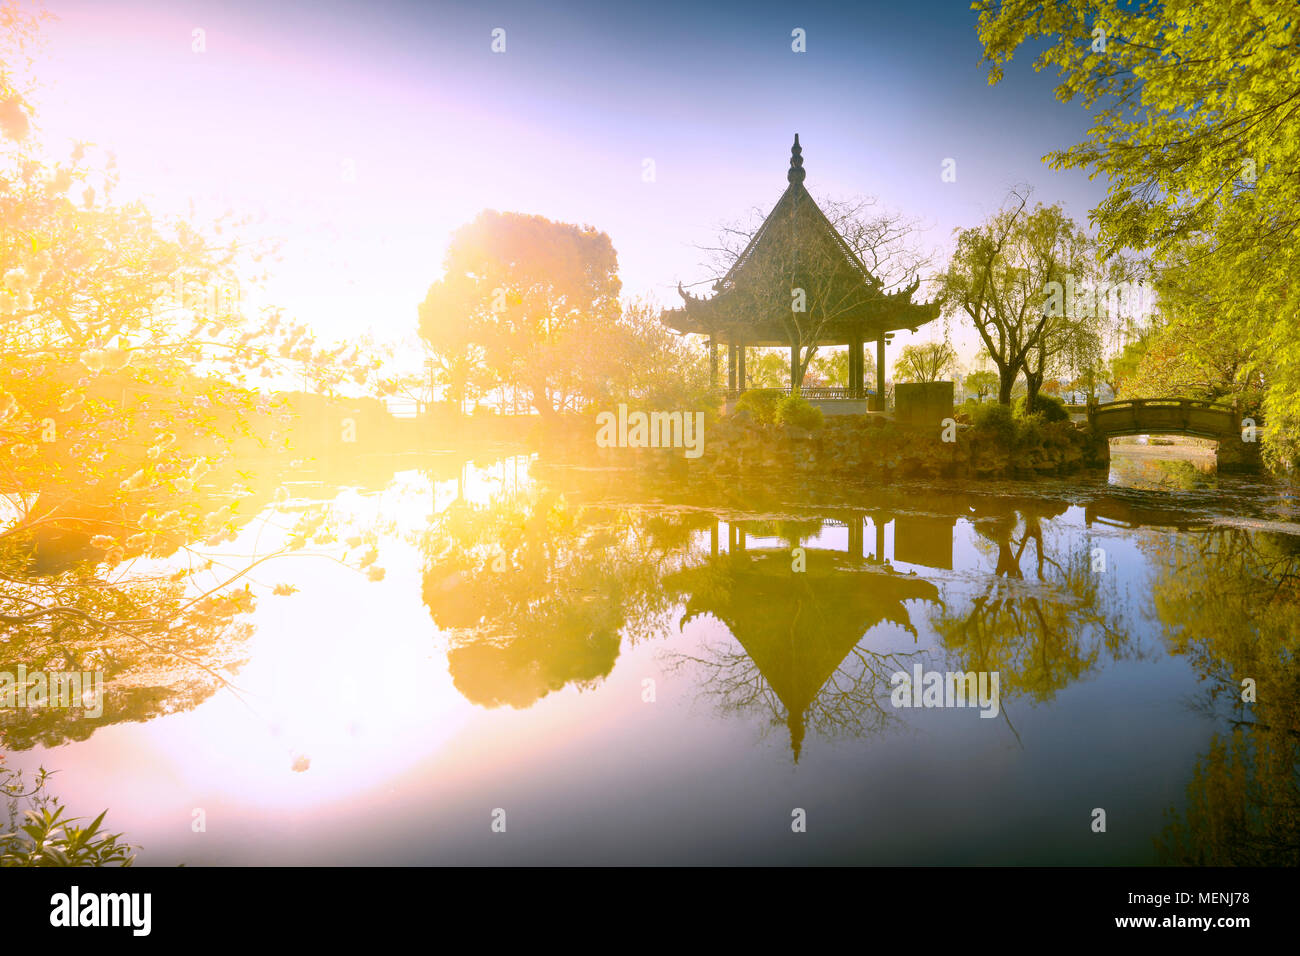 Xu Han Pavillon dans jardin de Fan Li.célèbre site pittoresque dans la province de Jiangsu, Chine. Banque D'Images